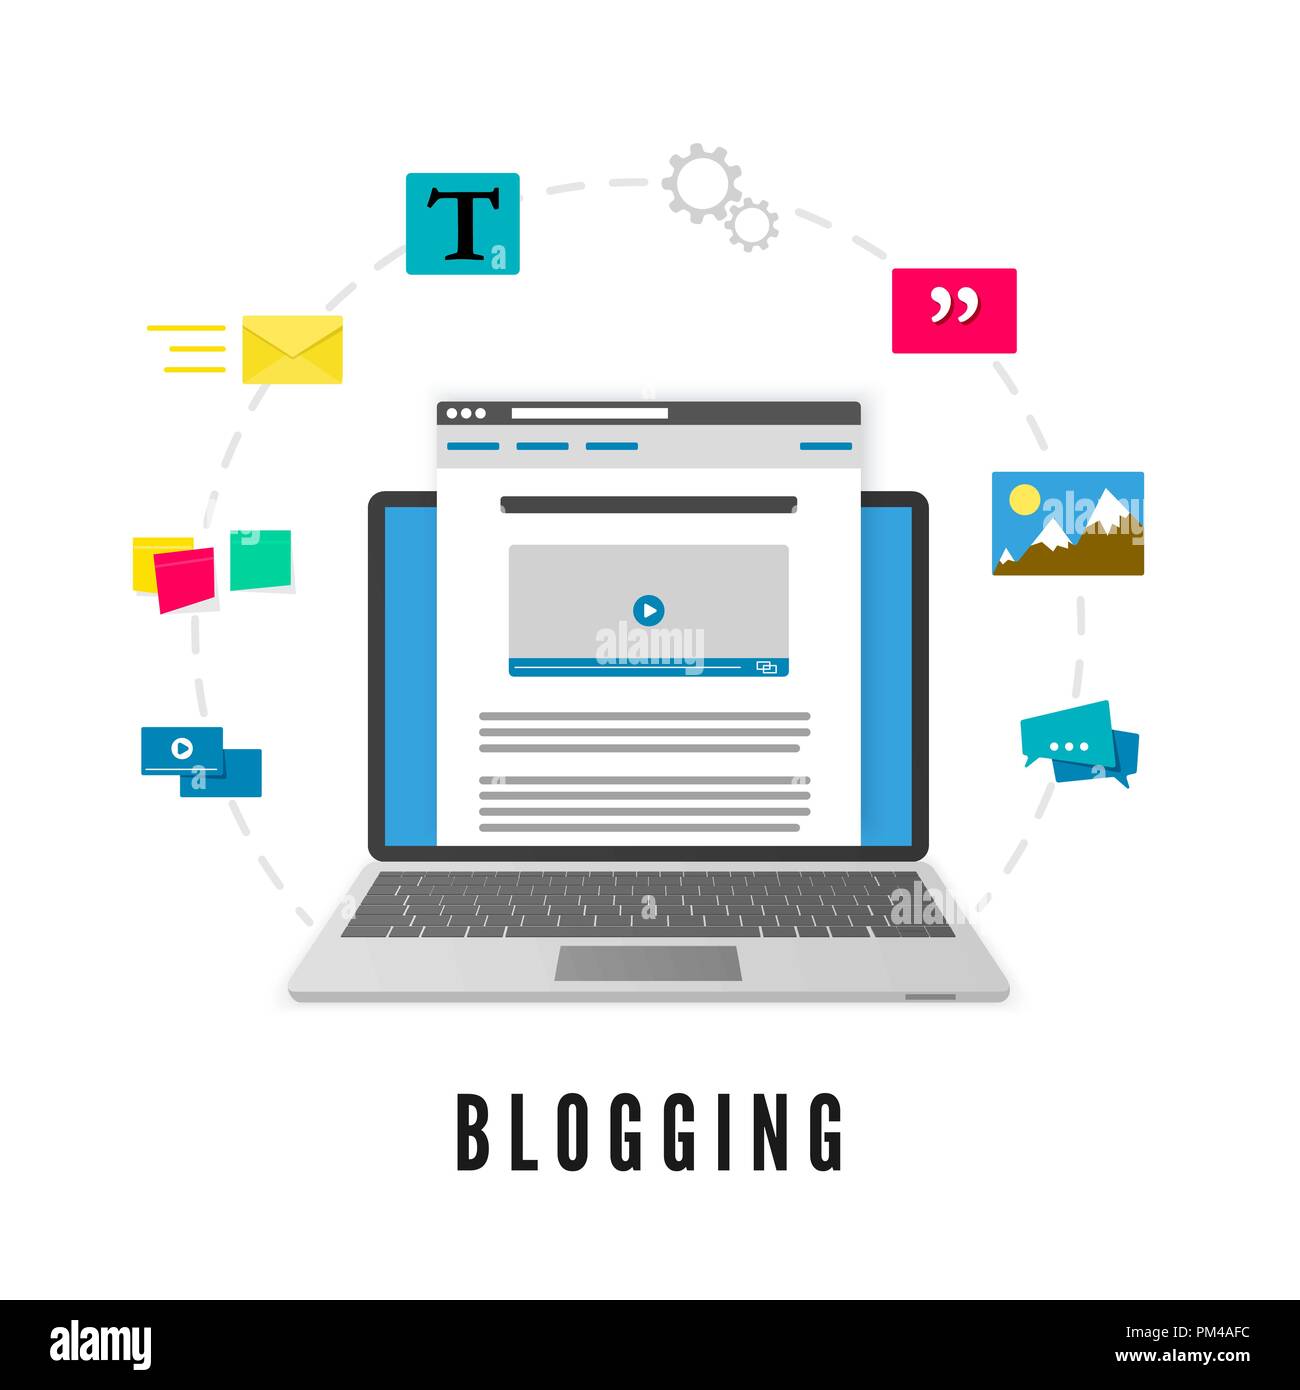 Entwicklung und Veröffentlichung Blog post. Website Entwicklung. Blogging Konzept. Vector Illustration auf weißem Hintergrund Stock Vektor